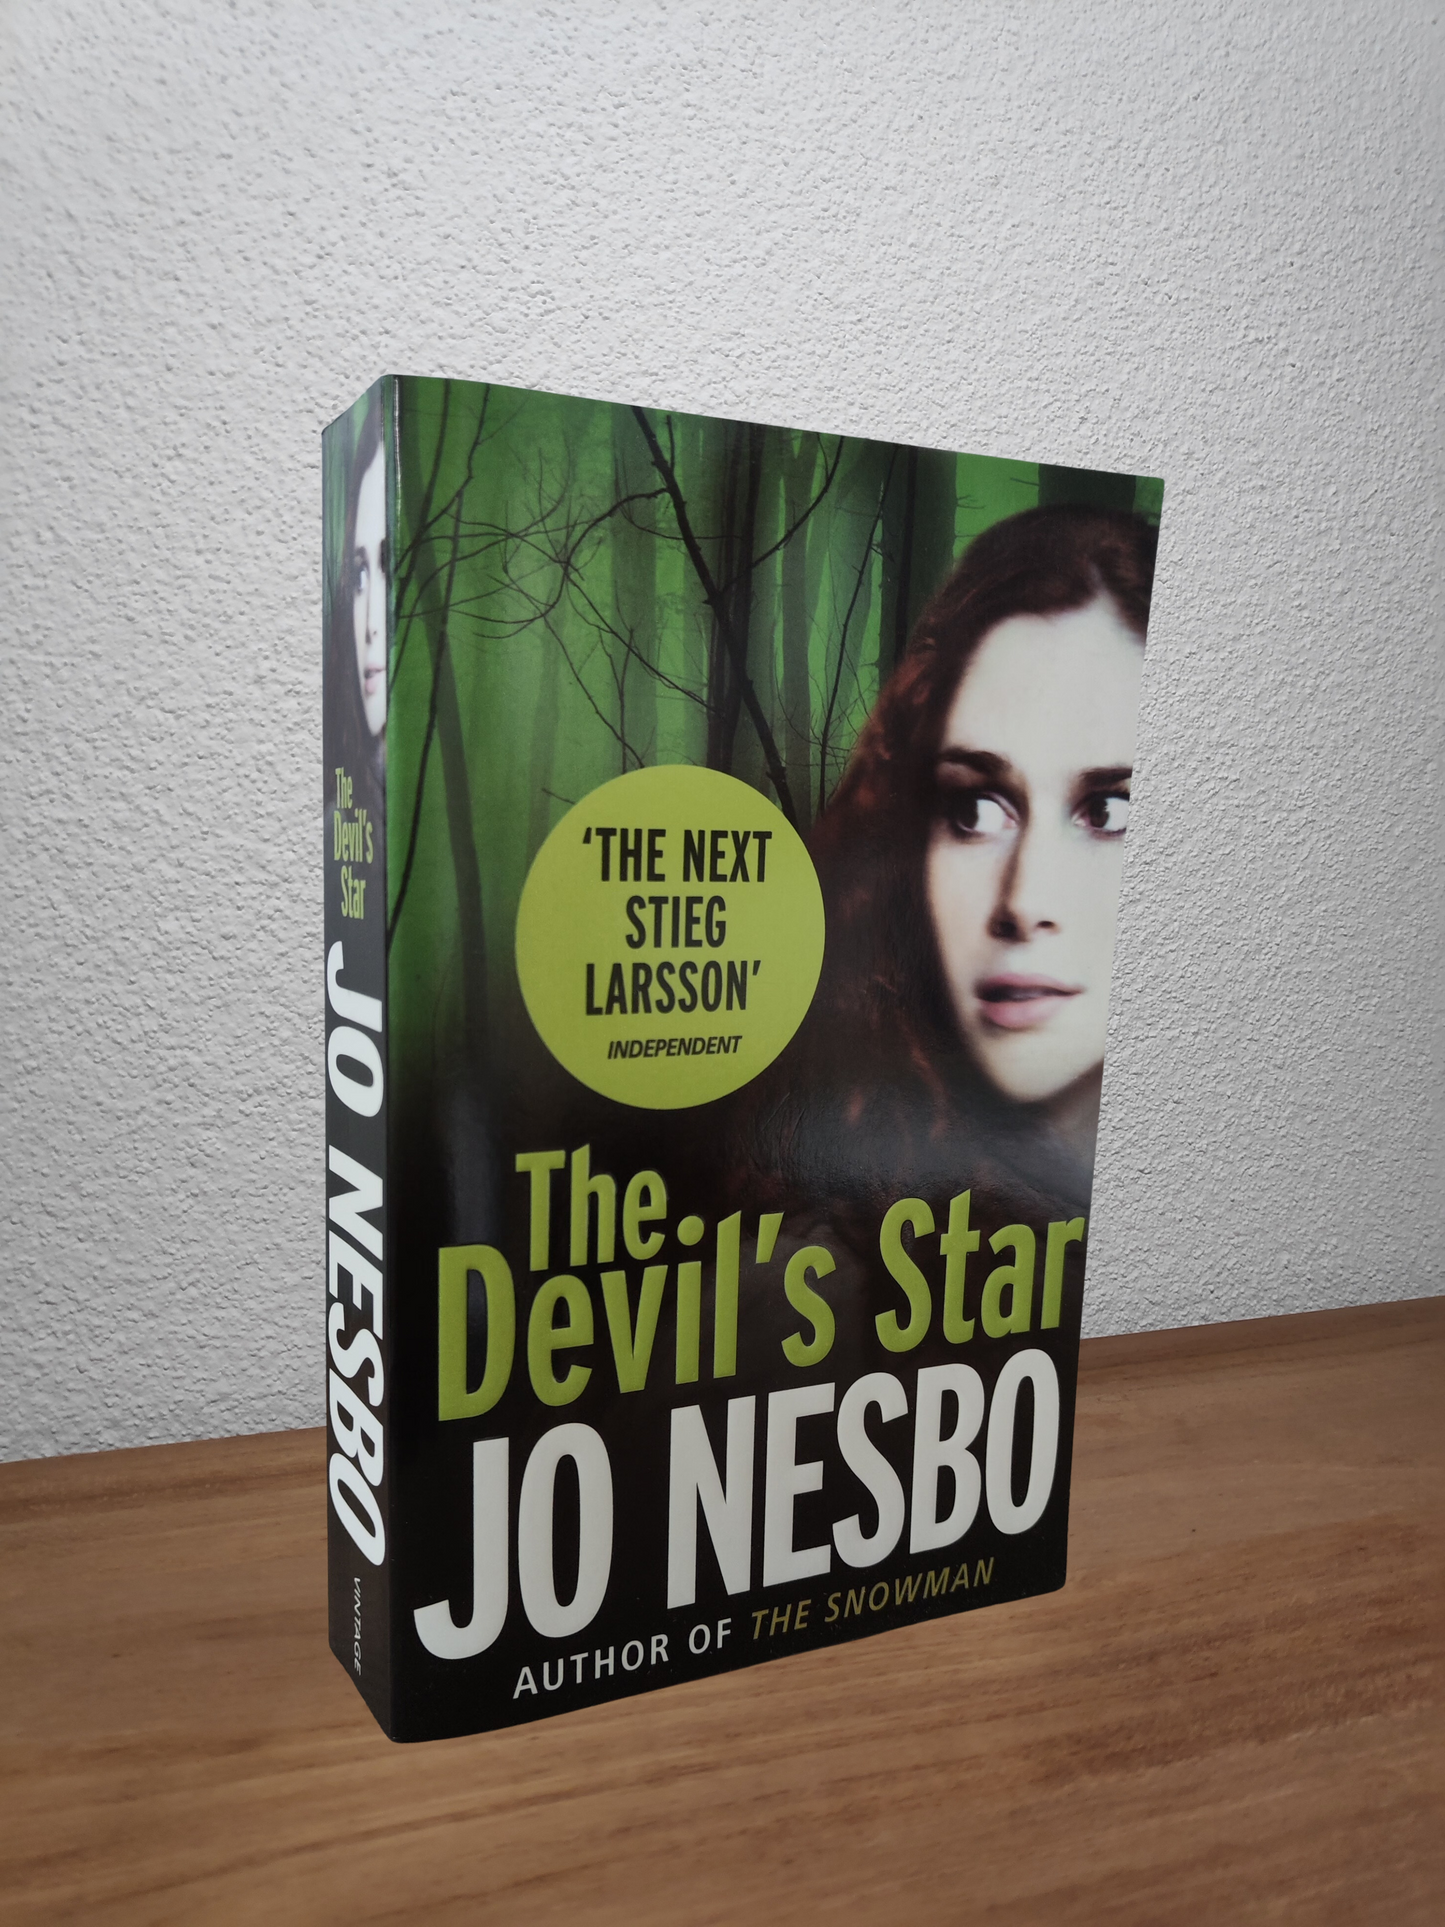 Jo Nesbo - The Devil's Star (Harry Hole #5)